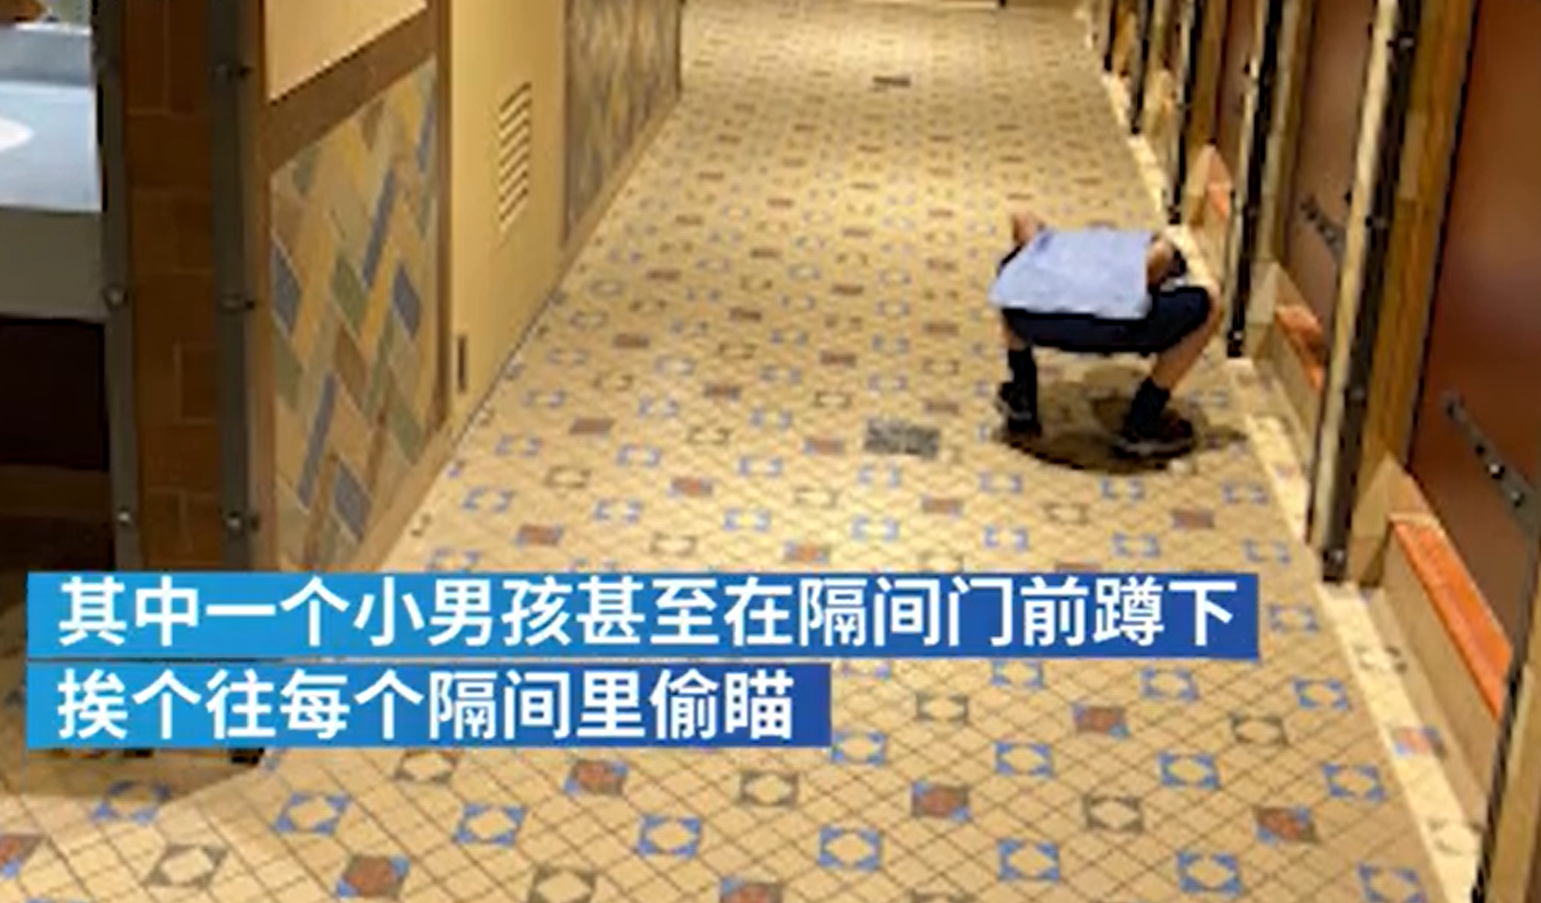 女厕不够用 香港厕所协会建议用尿斗让女性站着方便 给你好看 - 红蚂蚁